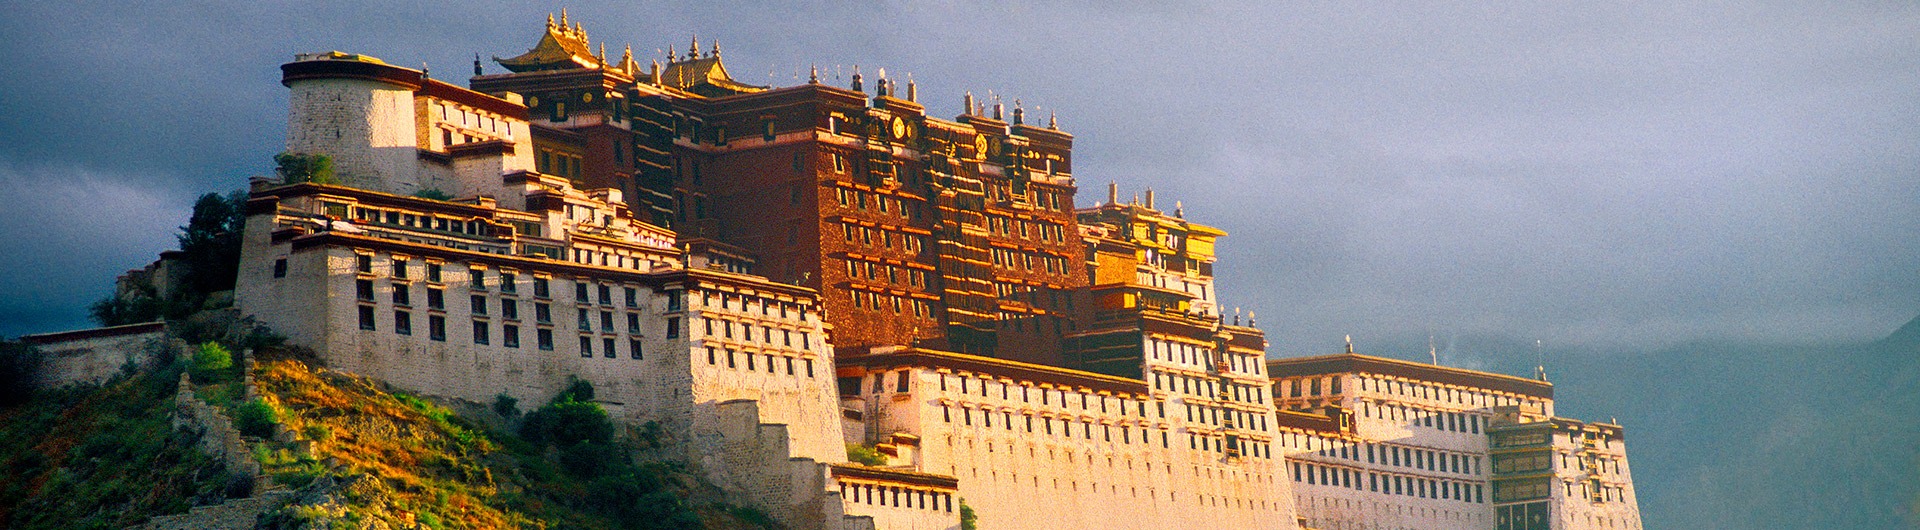 Potala Palace at dawn, Lhasa, Tibet